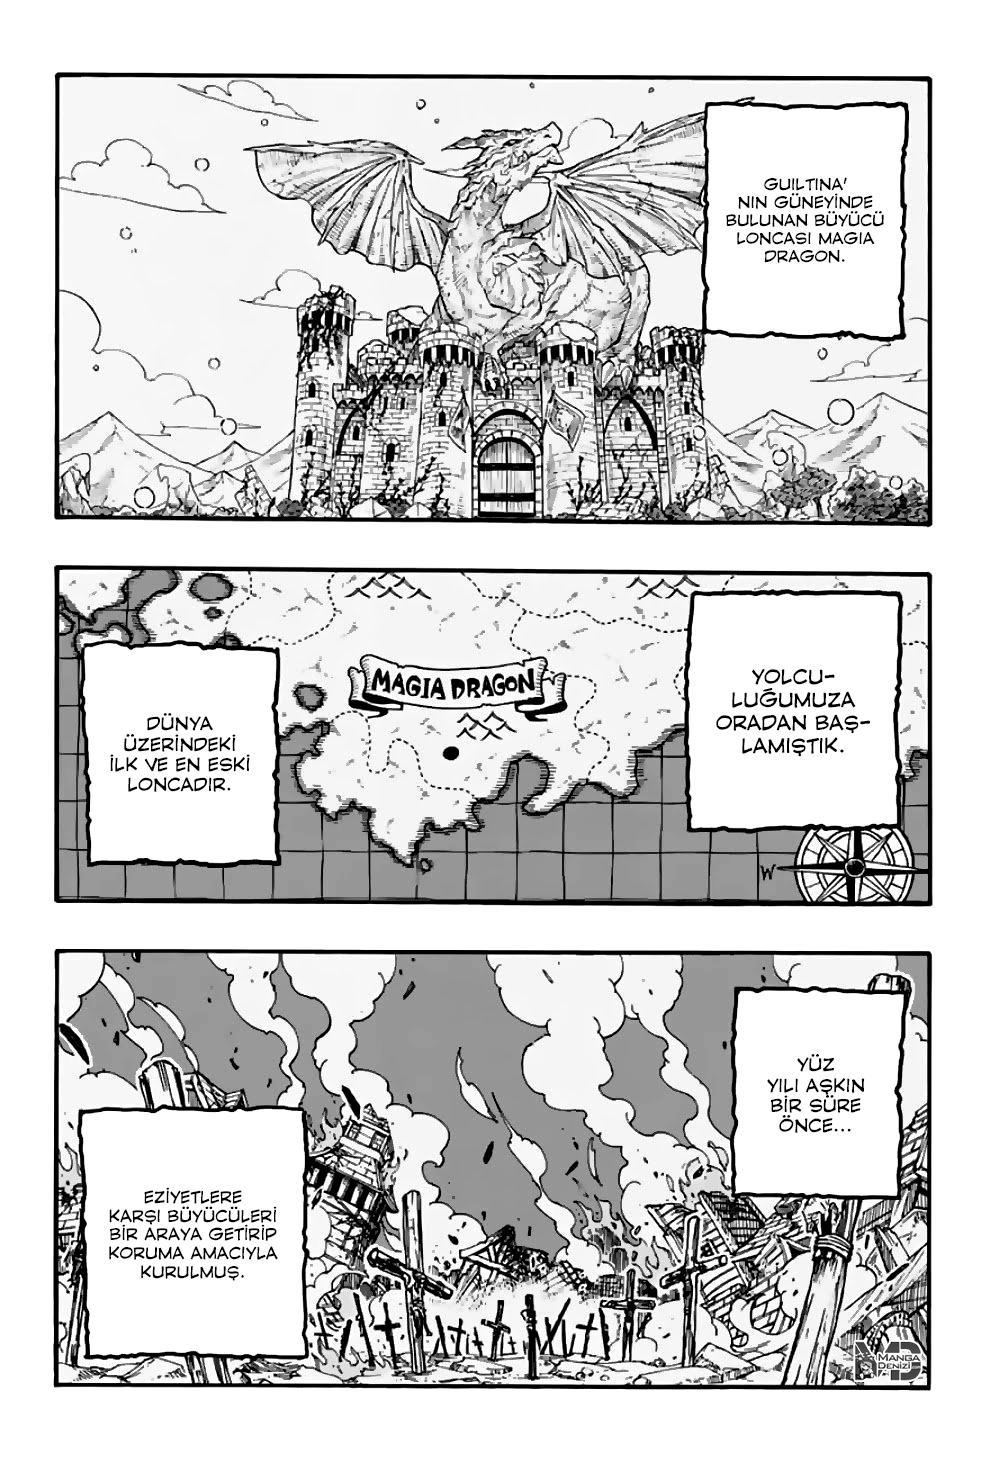 Fairy Tail: 100 Years Quest mangasının 092 bölümünün 3. sayfasını okuyorsunuz.